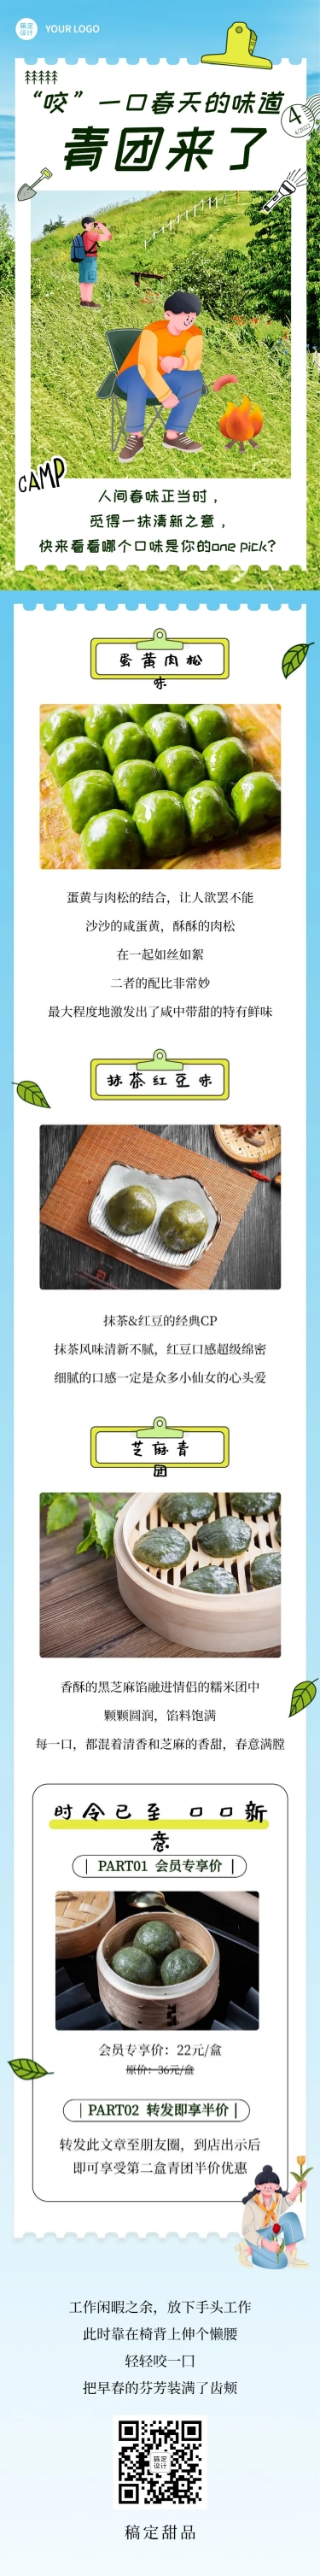 清明-节气青团营销促销餐饮文章长图